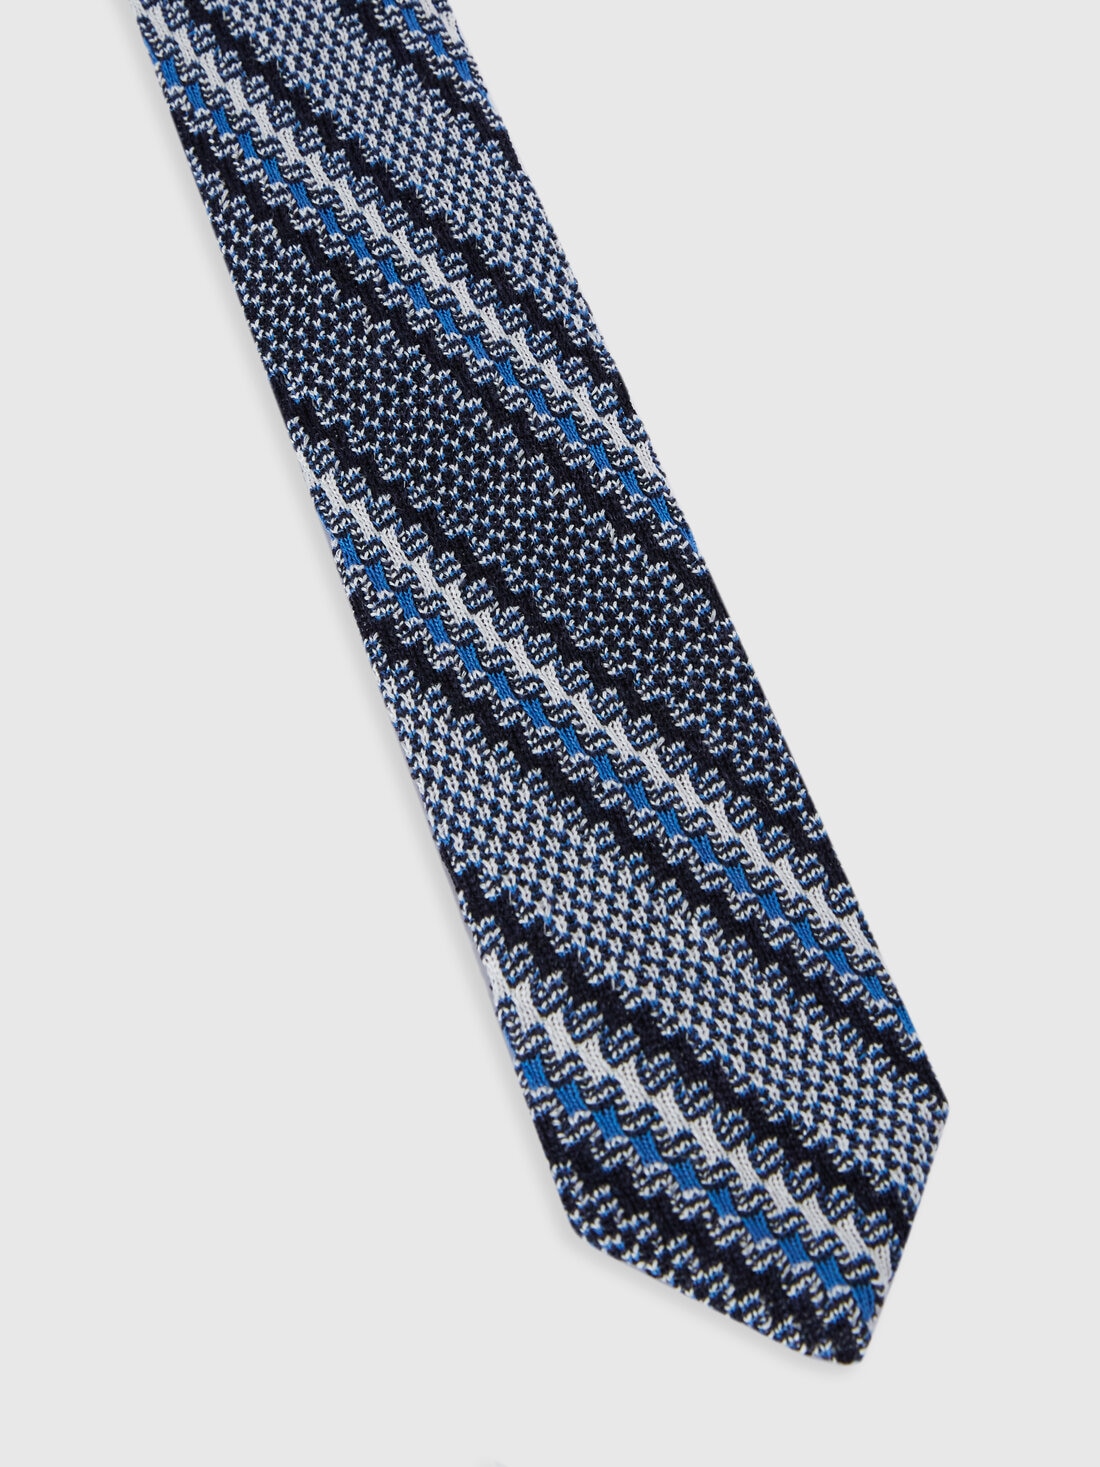 Krawatte aus Baumwolle und Leinen mit Stickereien, Mehrfarbig  - 8053147141879 - 1